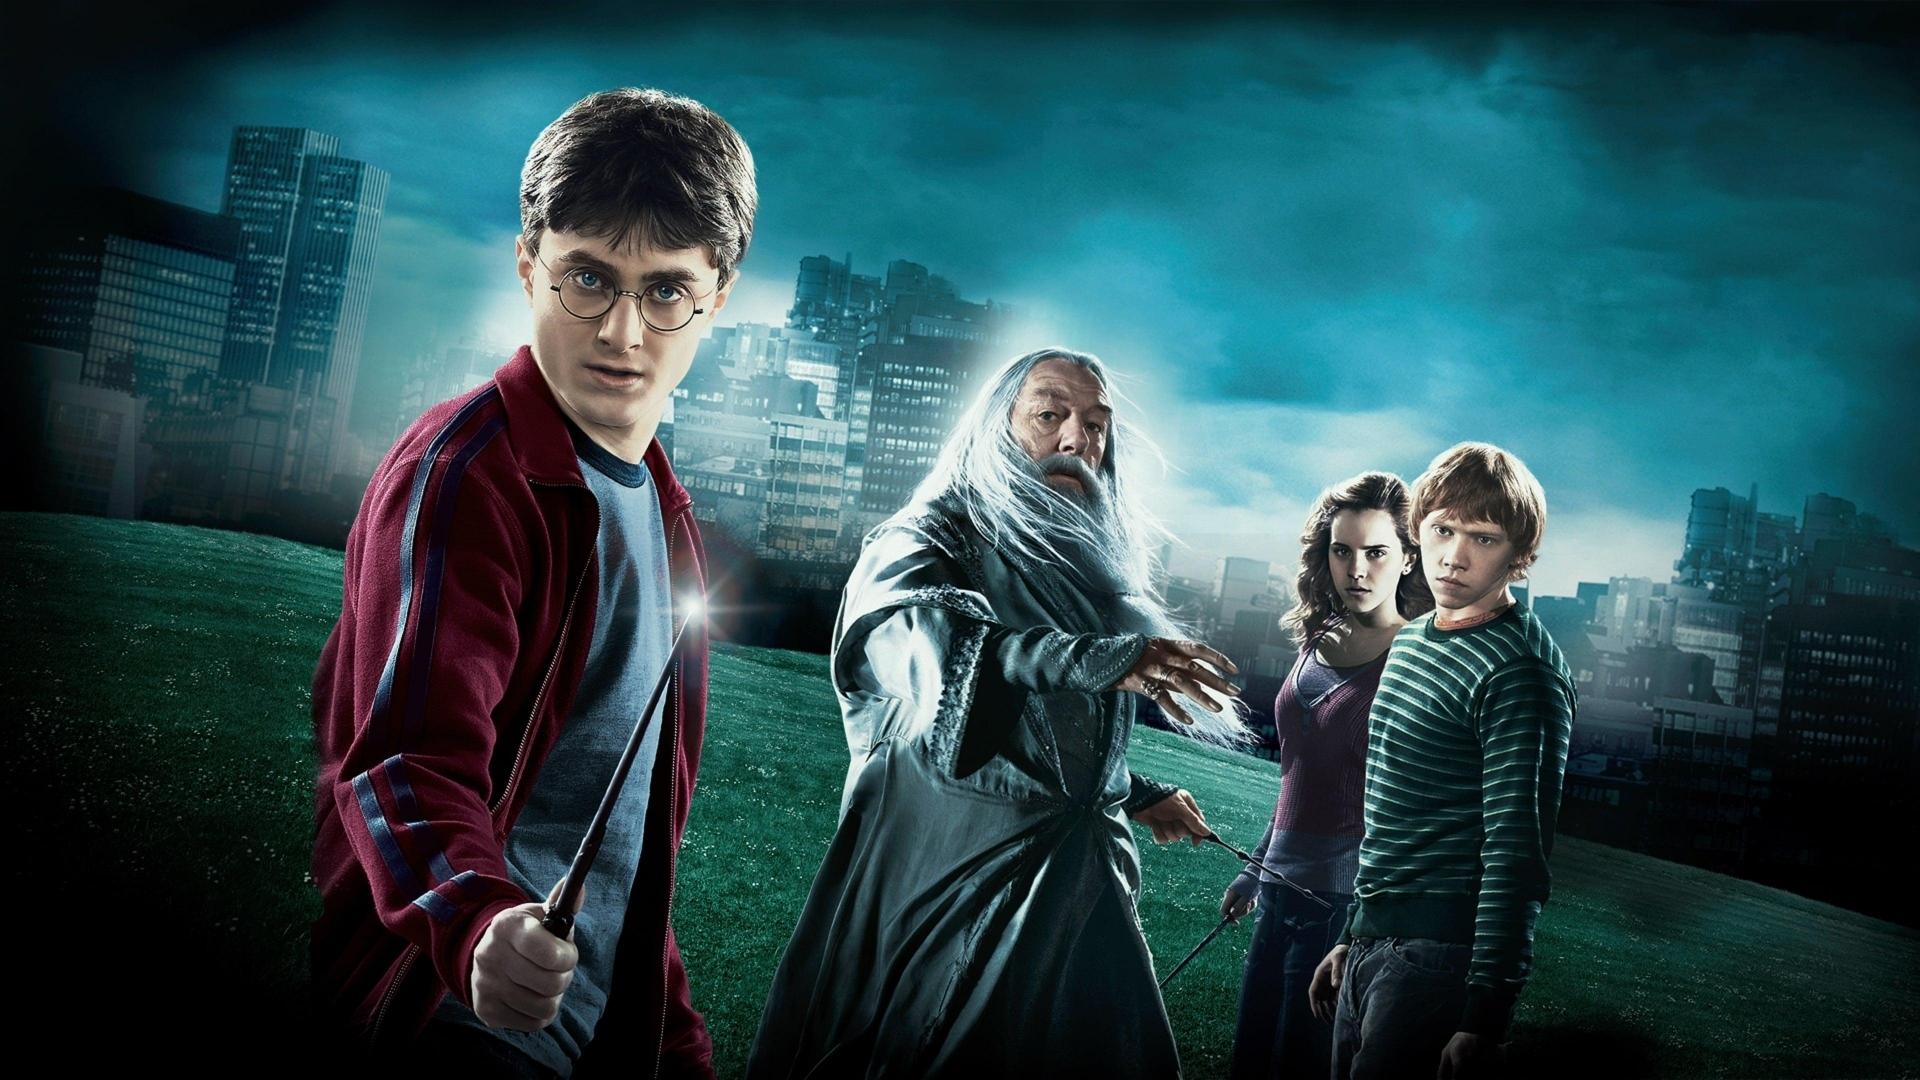 دانلود فیلم Harry Potter and the Half-Blood Prince 2009